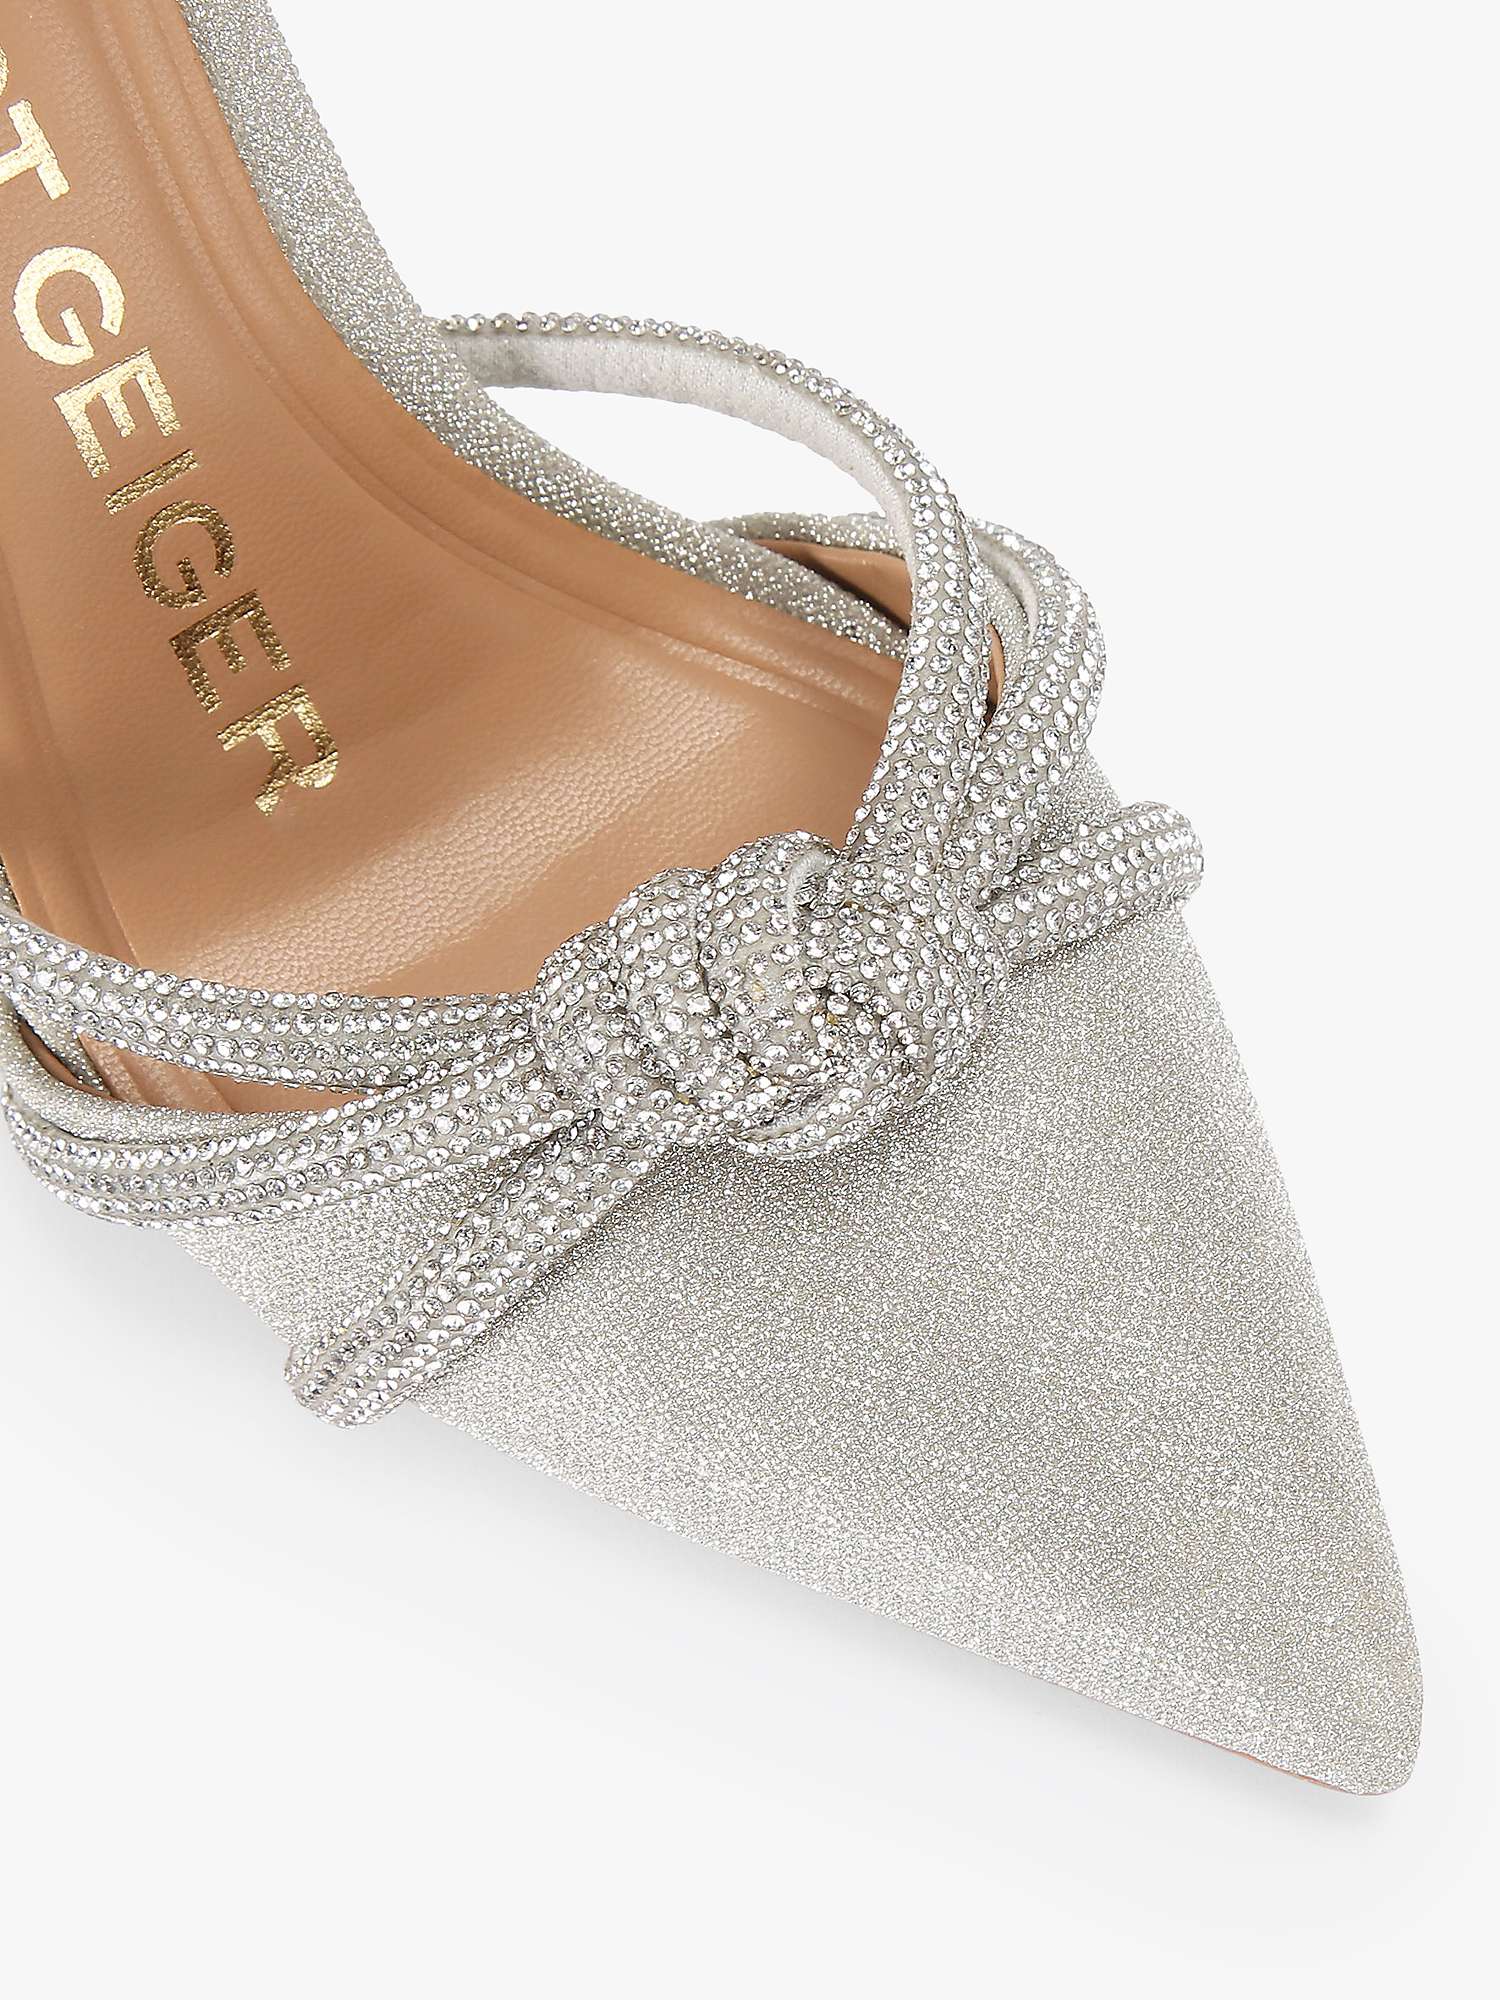 Buy KG Kurt Geiger Ava Embellished Court Shoes, Silver Online at johnlewis.com